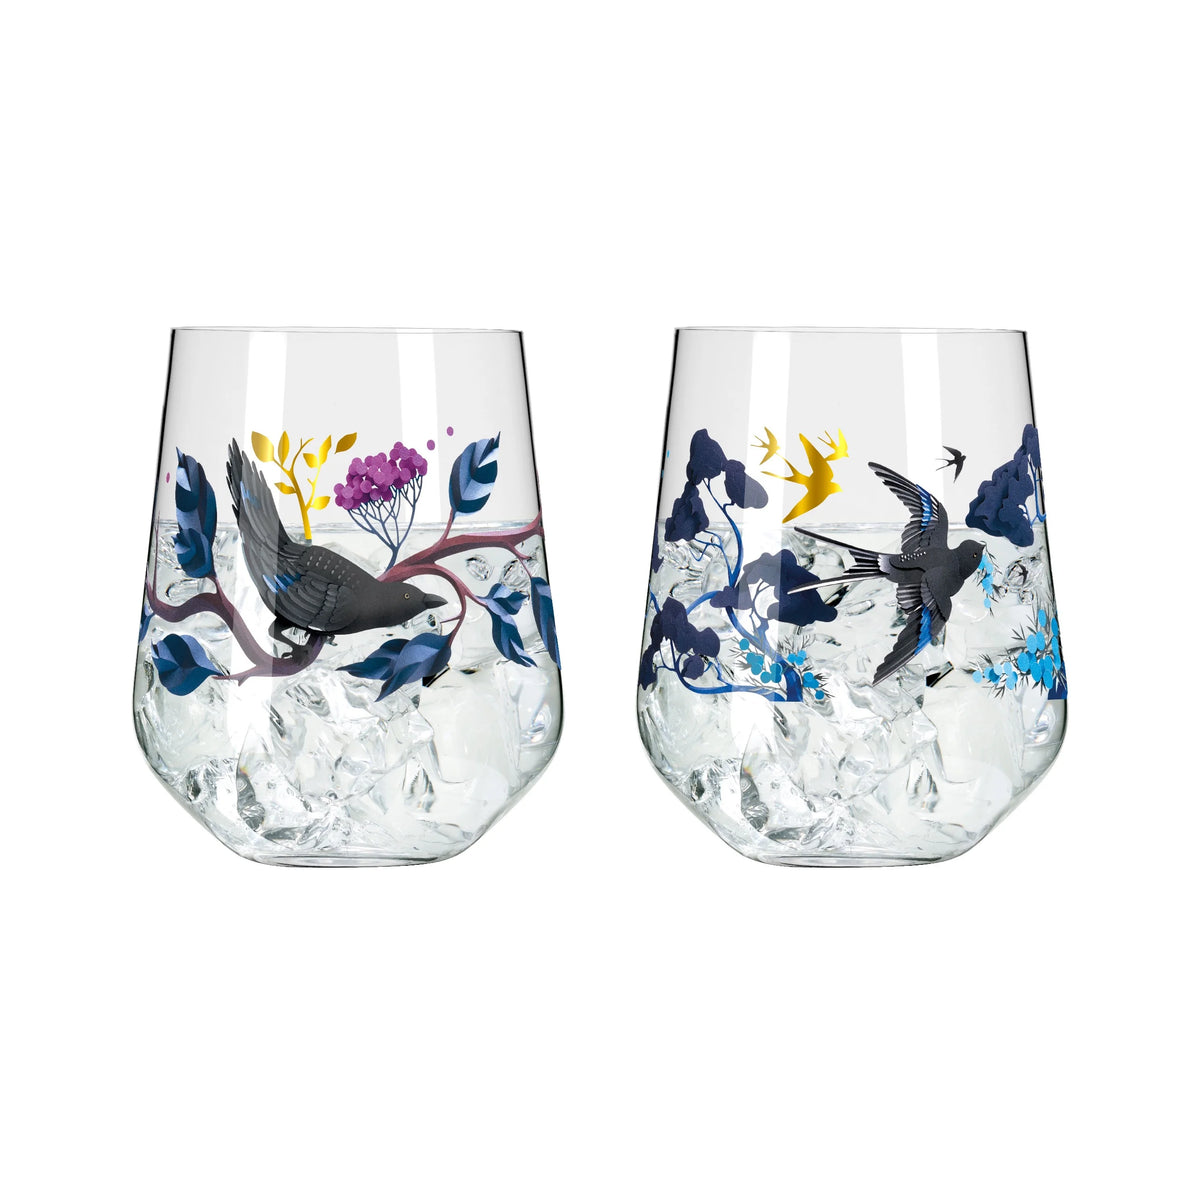 RITZENHOFF | Botanic Glamour Gin Tumbler, Set of 2 | Design: Joyanne Horscroft #2